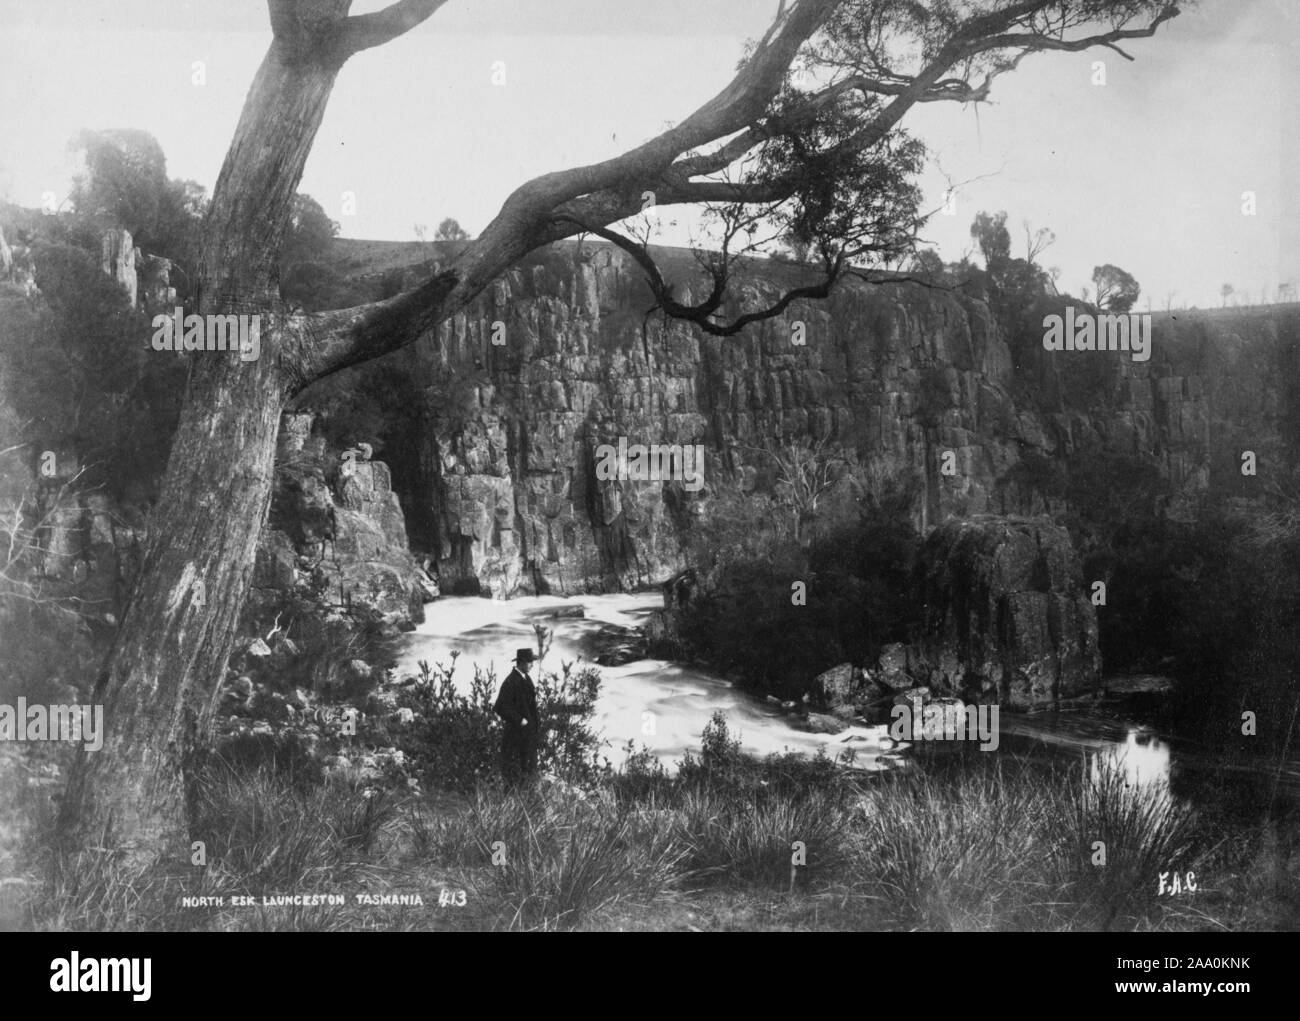 Photographie en noir et blanc d'un homme dans un chapeau debout sur la rive de la rivière North Esk près de Launceston, Tasmanie, Australie, par le photographe Frank Coxhead, 1885. À partir de la Bibliothèque publique de New York. () Banque D'Images